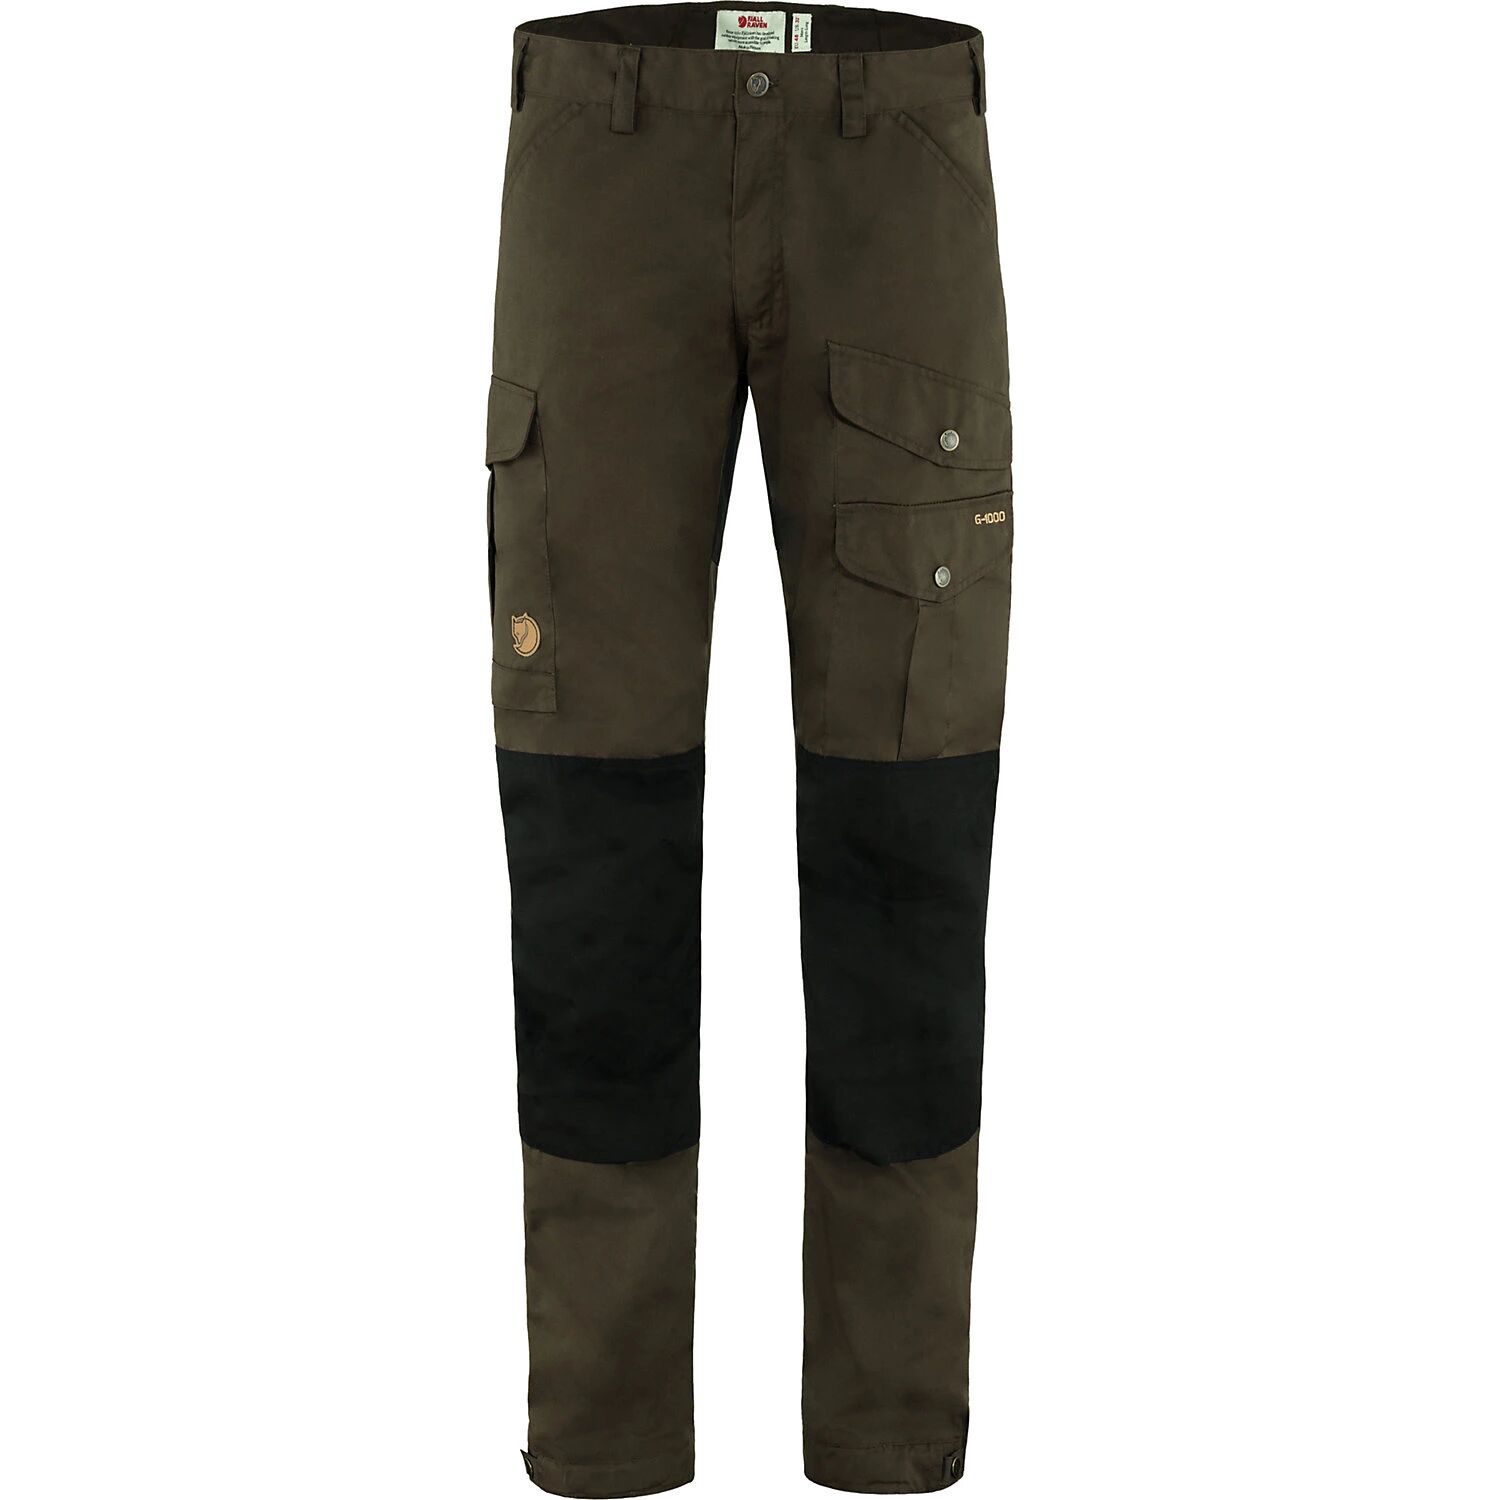 Fjallraven Men's Vidda Pro Trouser, Size 34, Brown